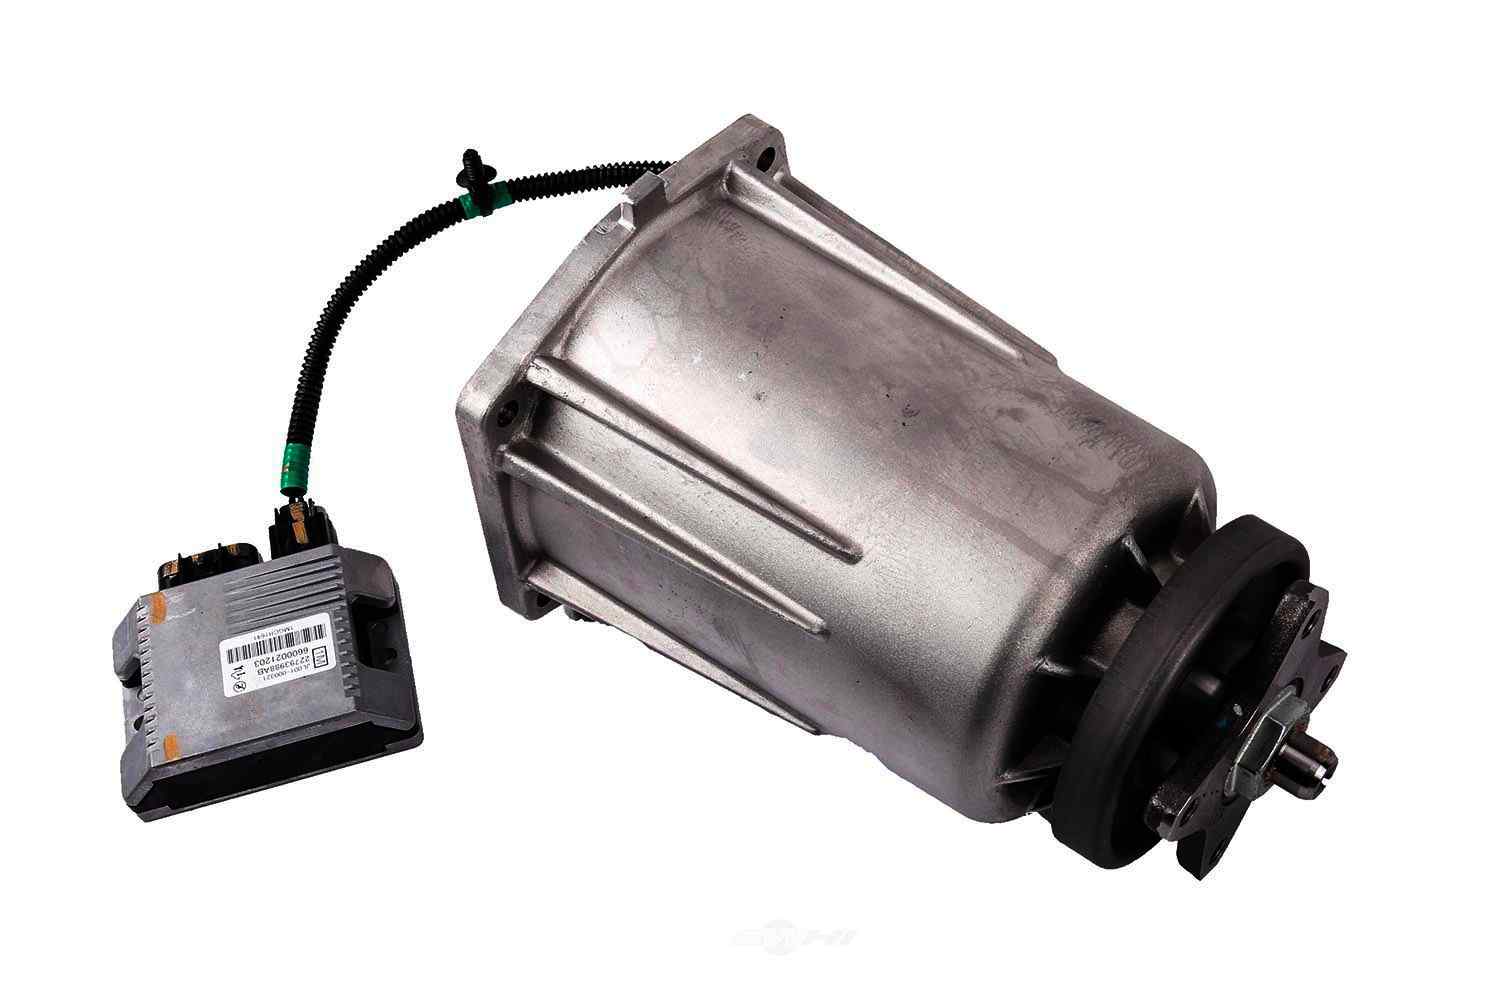 GM GENUINE PARTS CANADA - Differential Clutch Pump Actuator - GMC 84165522